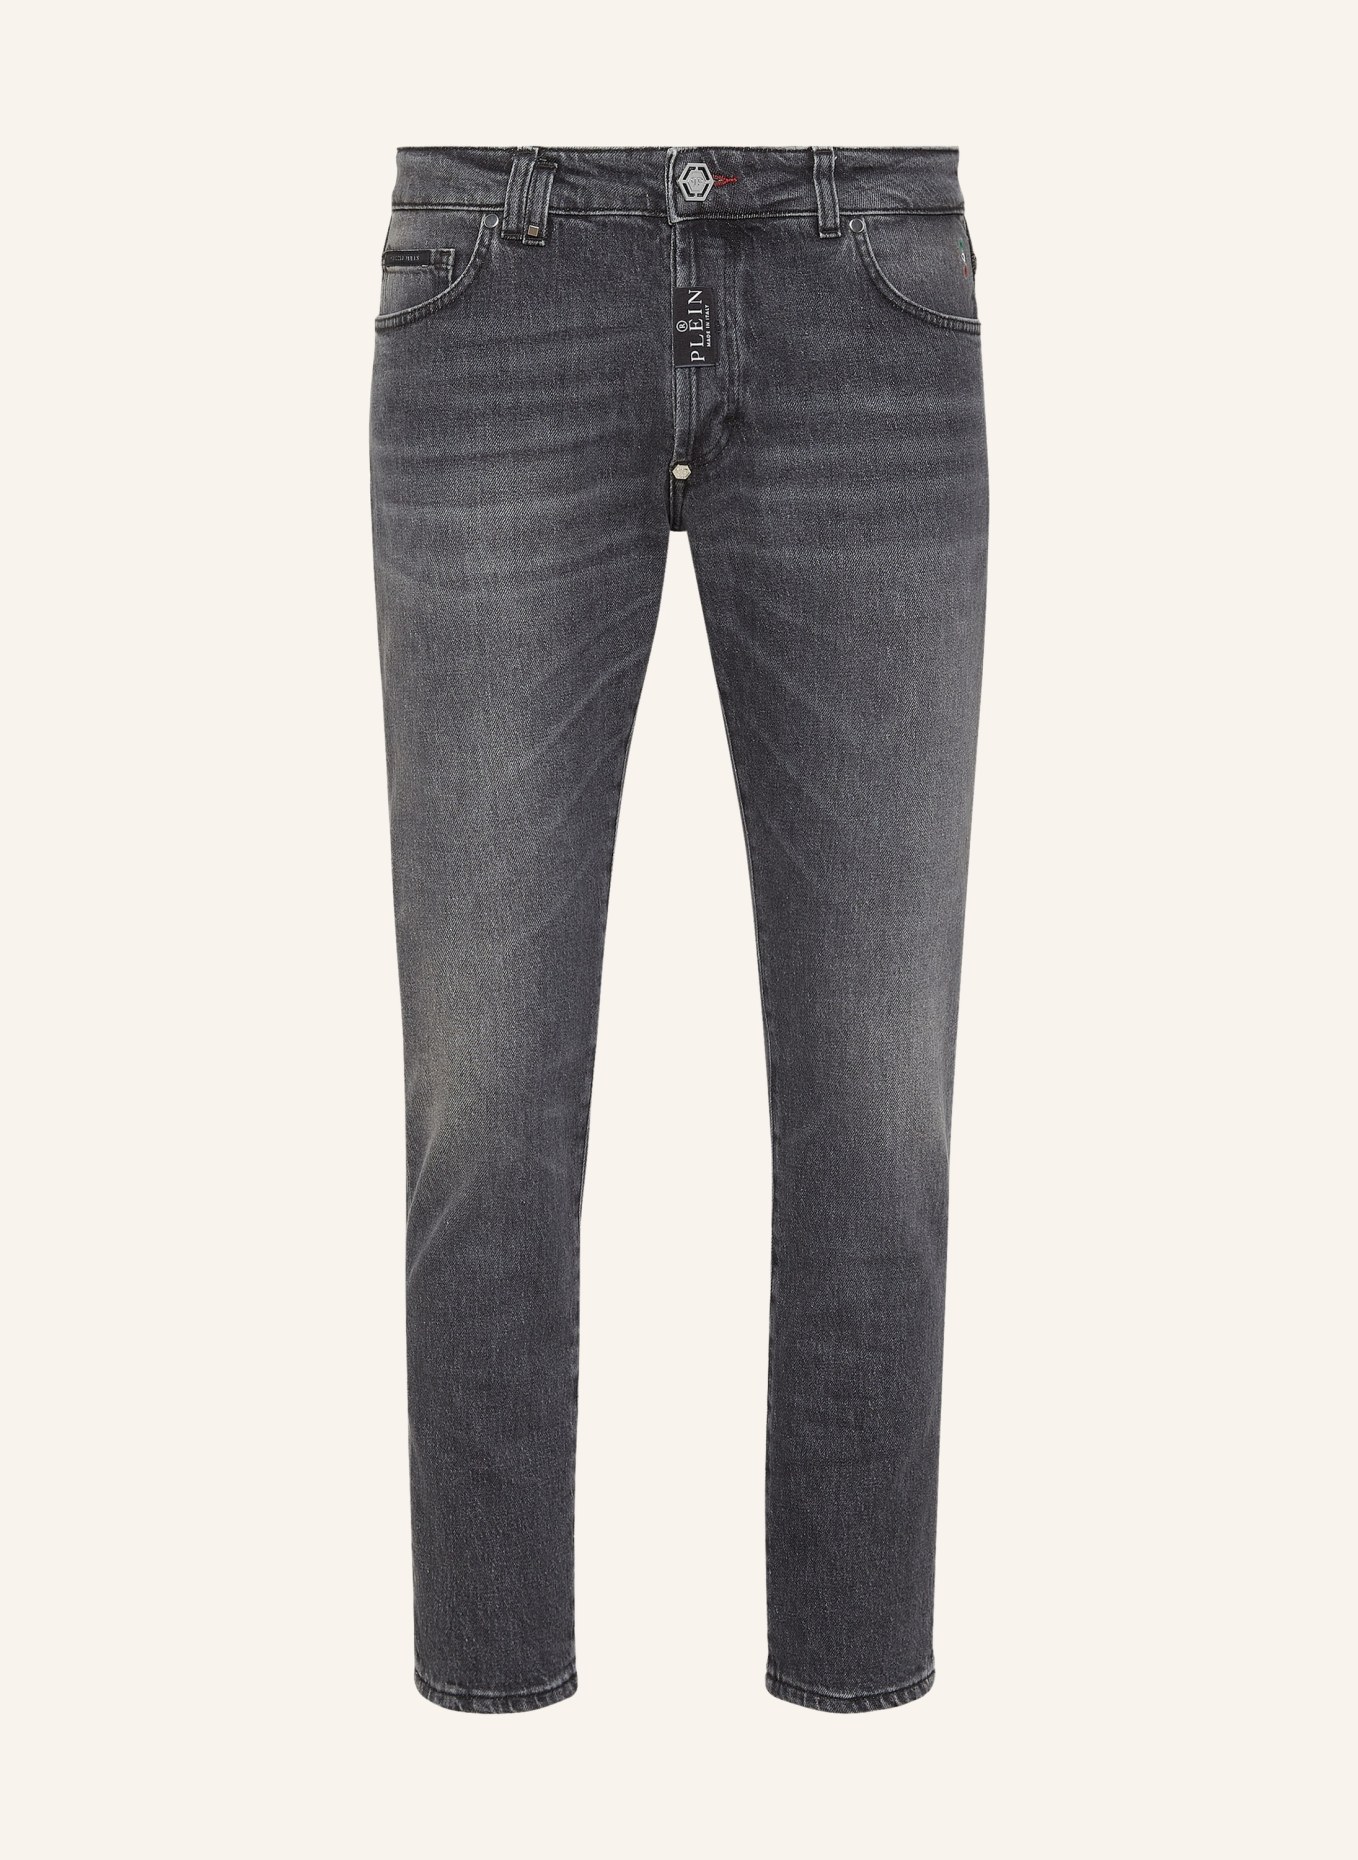 PHILIPP PLEIN Jeans Skinny Fit, Farbe: GRAU (Bild 1)